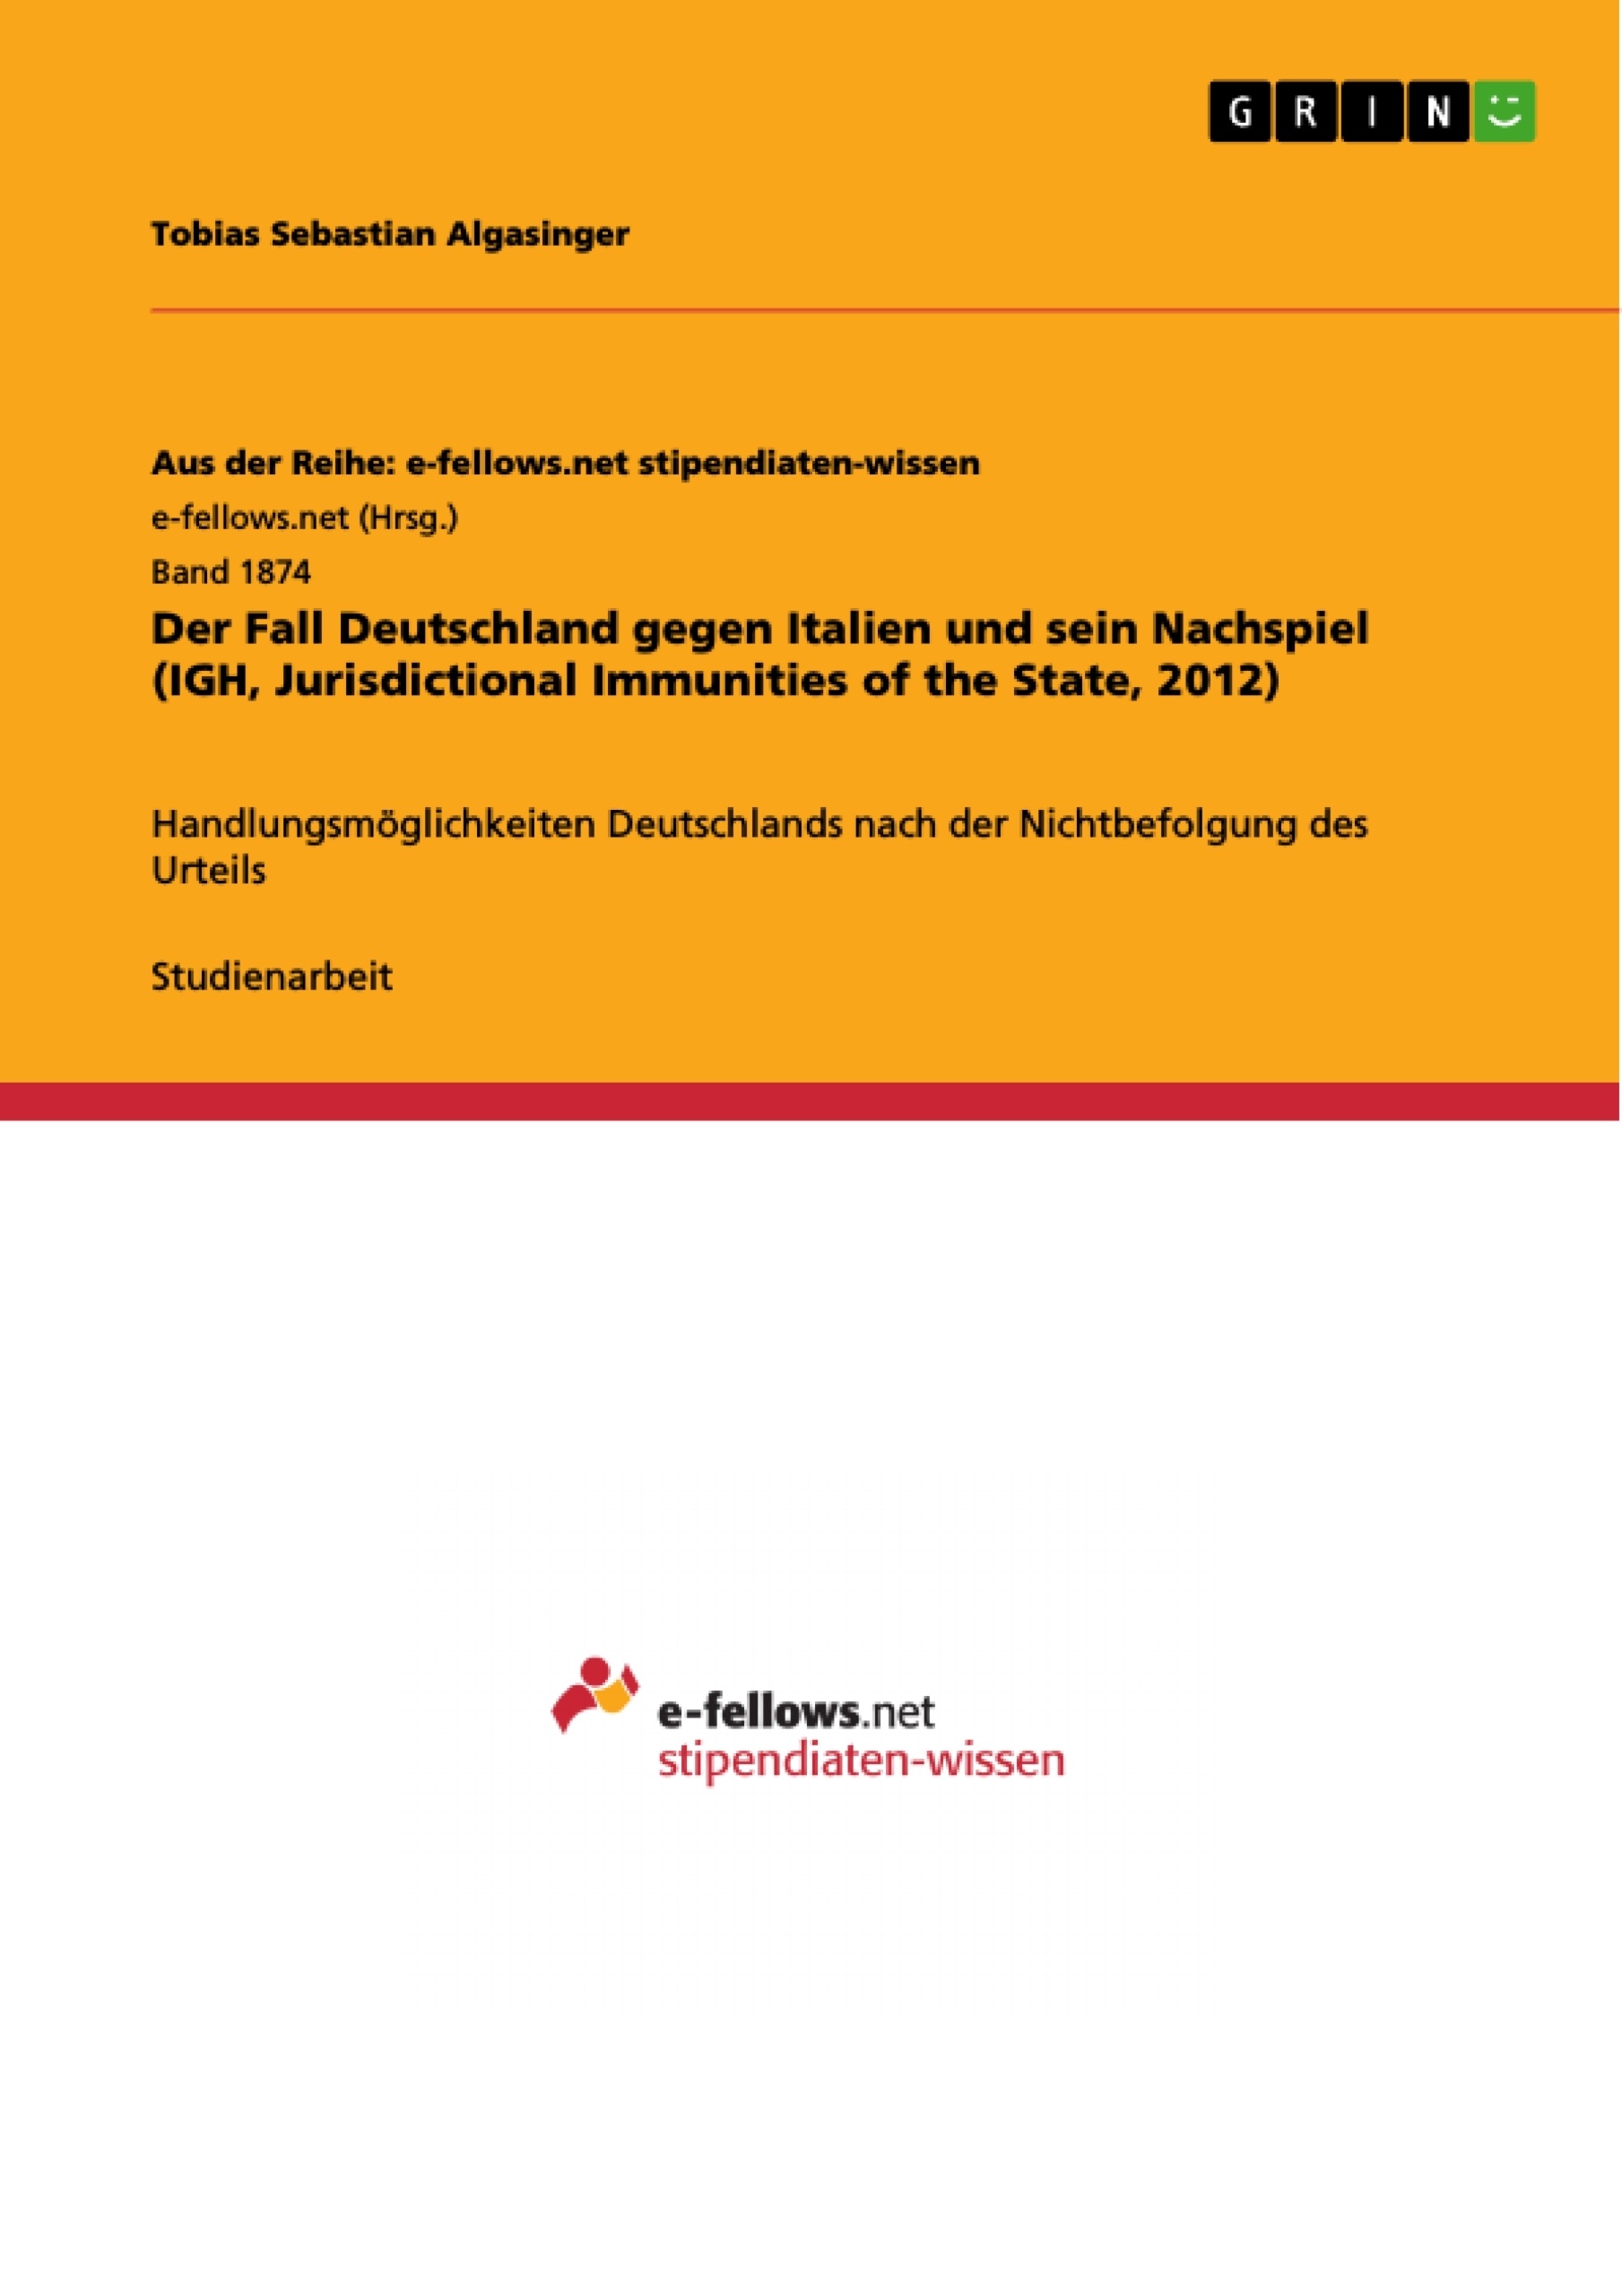 Title: Der Fall Deutschland gegen Italien und sein Nachspiel (IGH, Jurisdictional Immunities of the State, 2012)